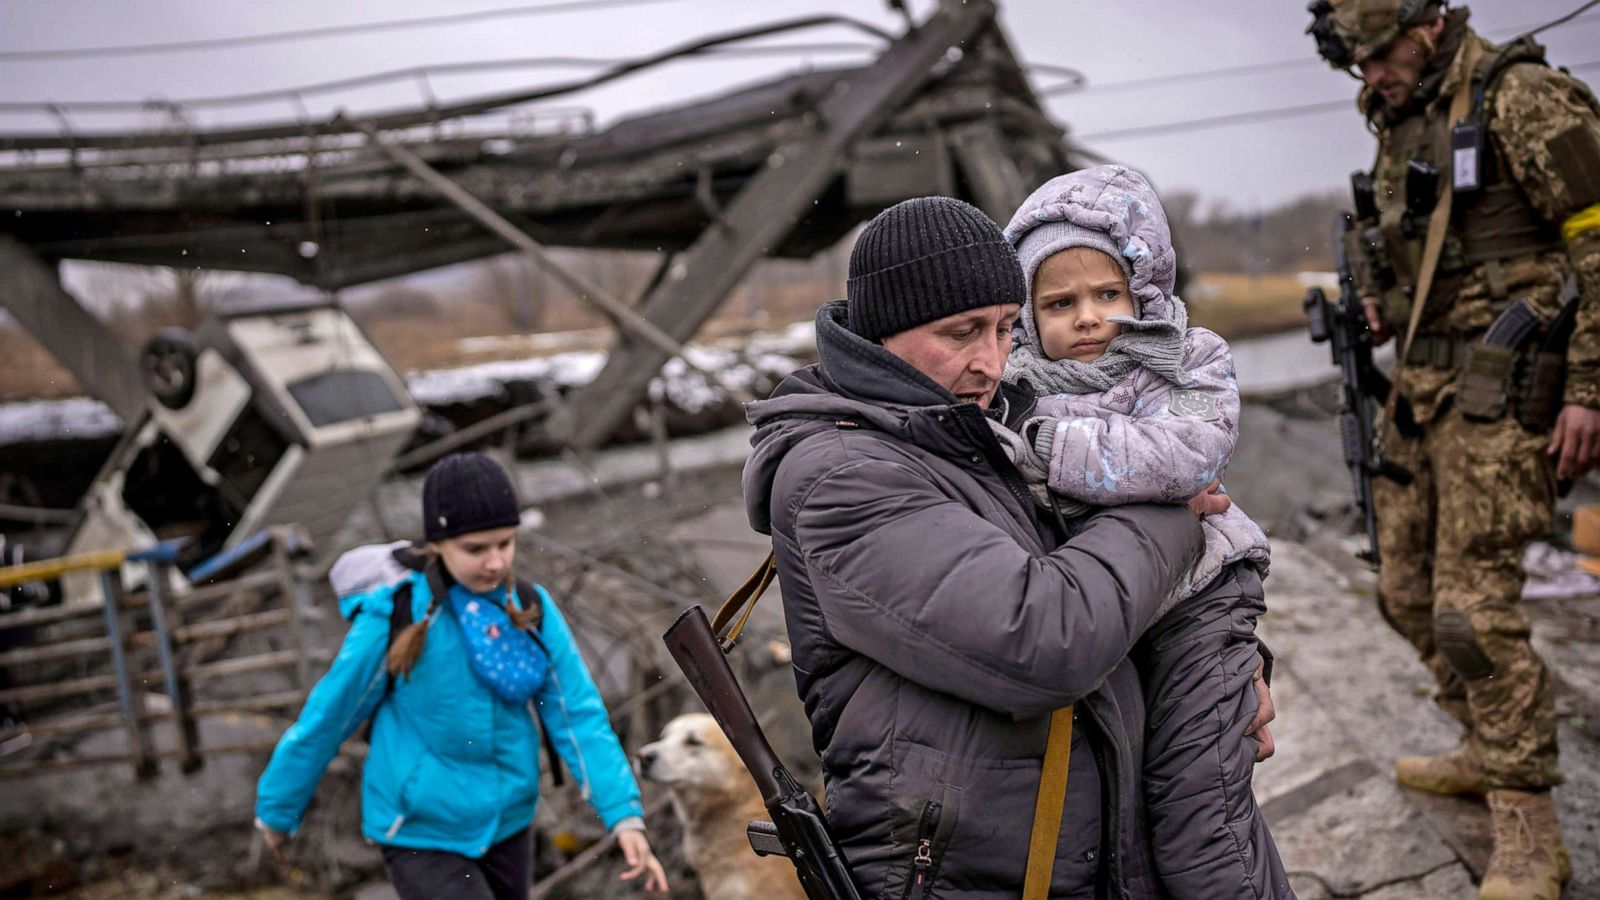 Mental health effects of Ukraine war zone on children - ABC News